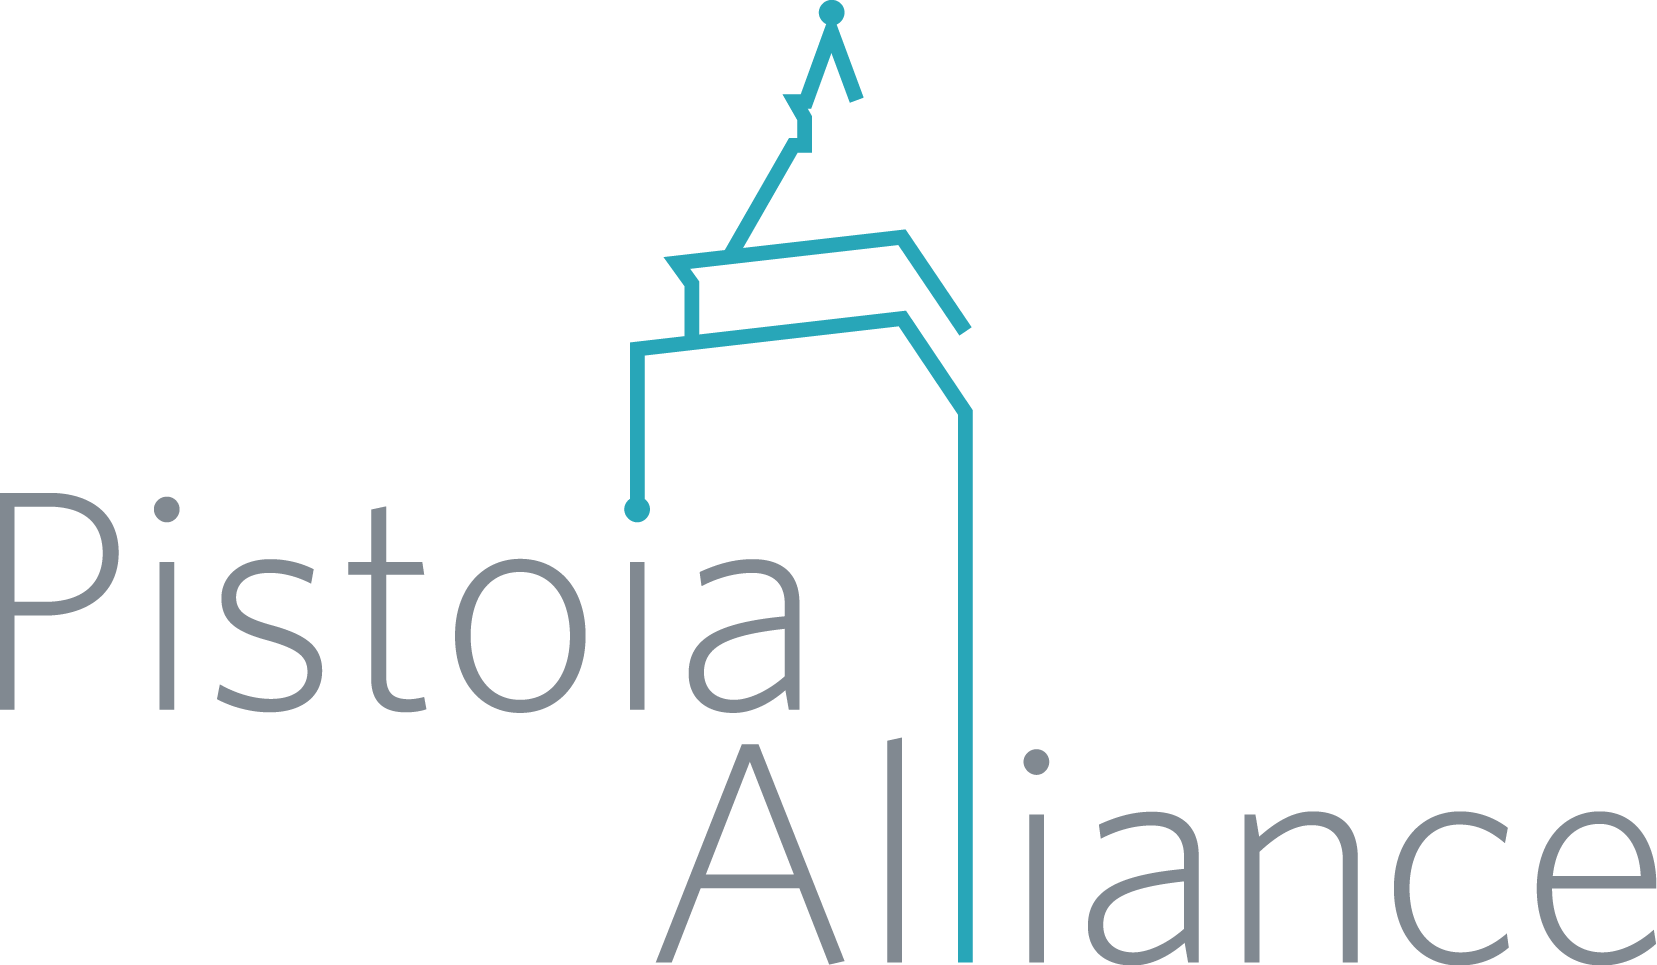 Pistoia Alliance logo